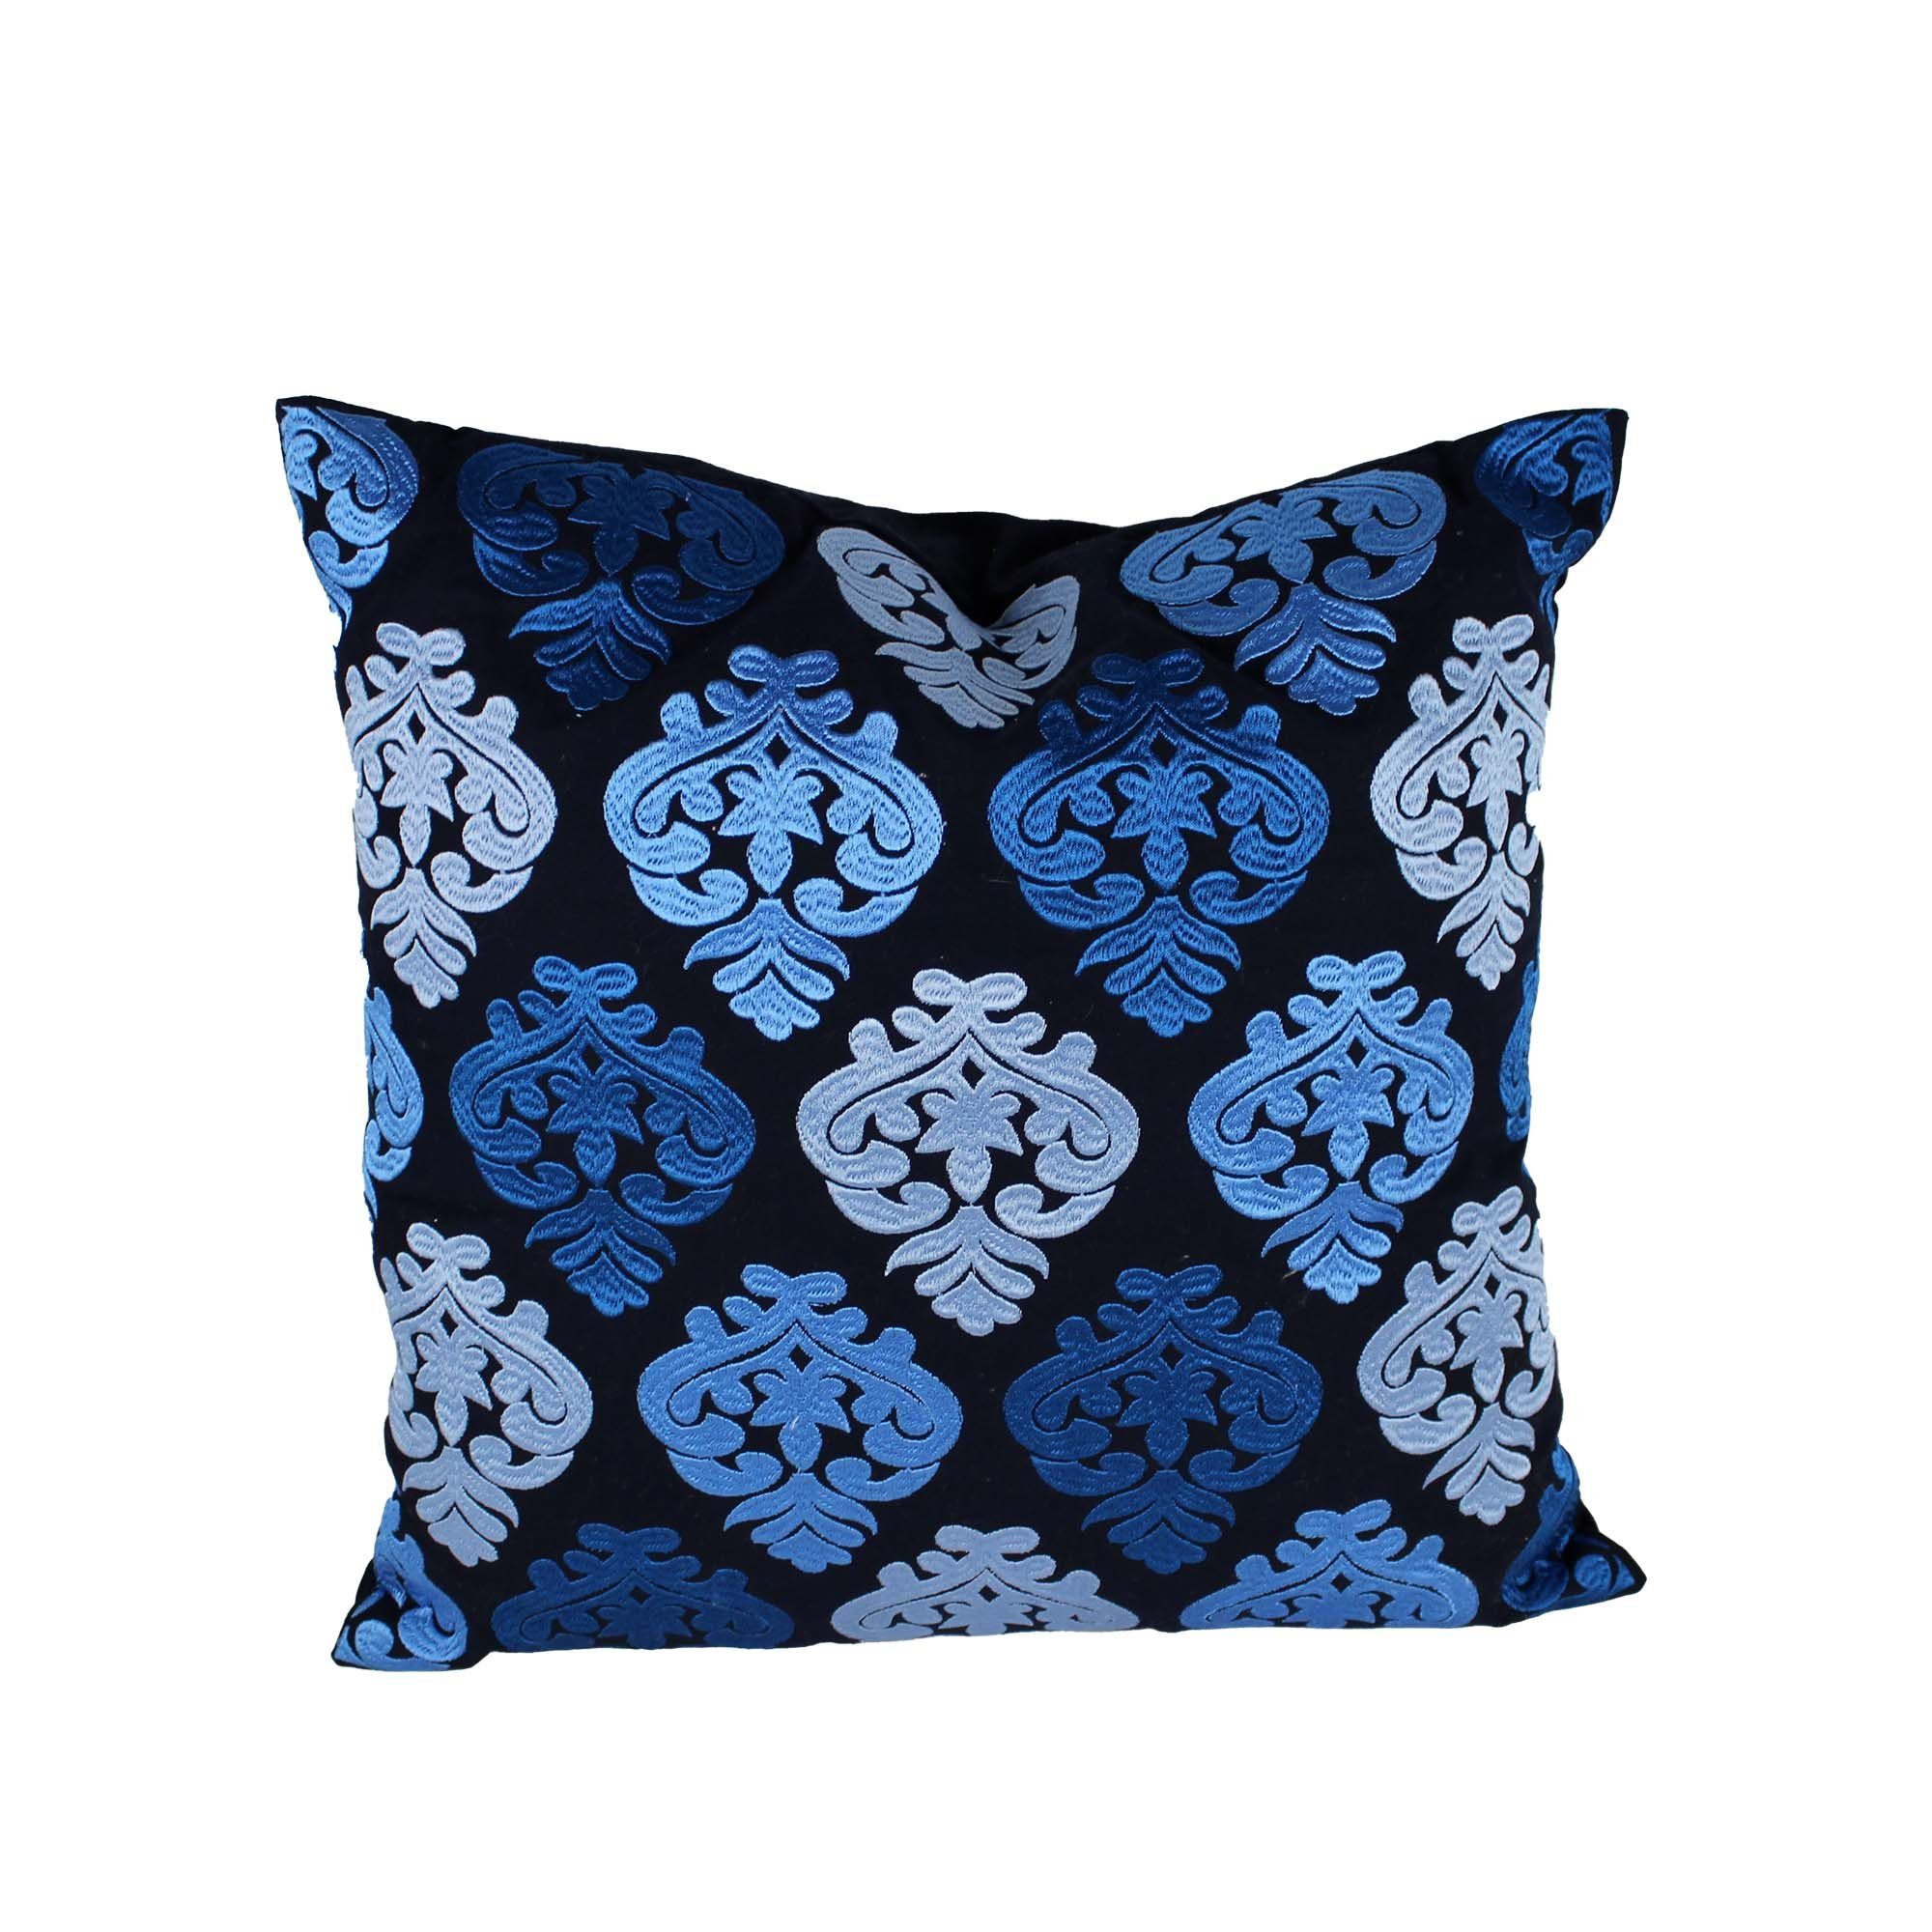 Indradanush Dekokissen Kissen 50 x 50 cm Baumwolle mit bunter Stickerei, inklusive Füllung, abziehbar hellblau - dunkelblau - schwarz